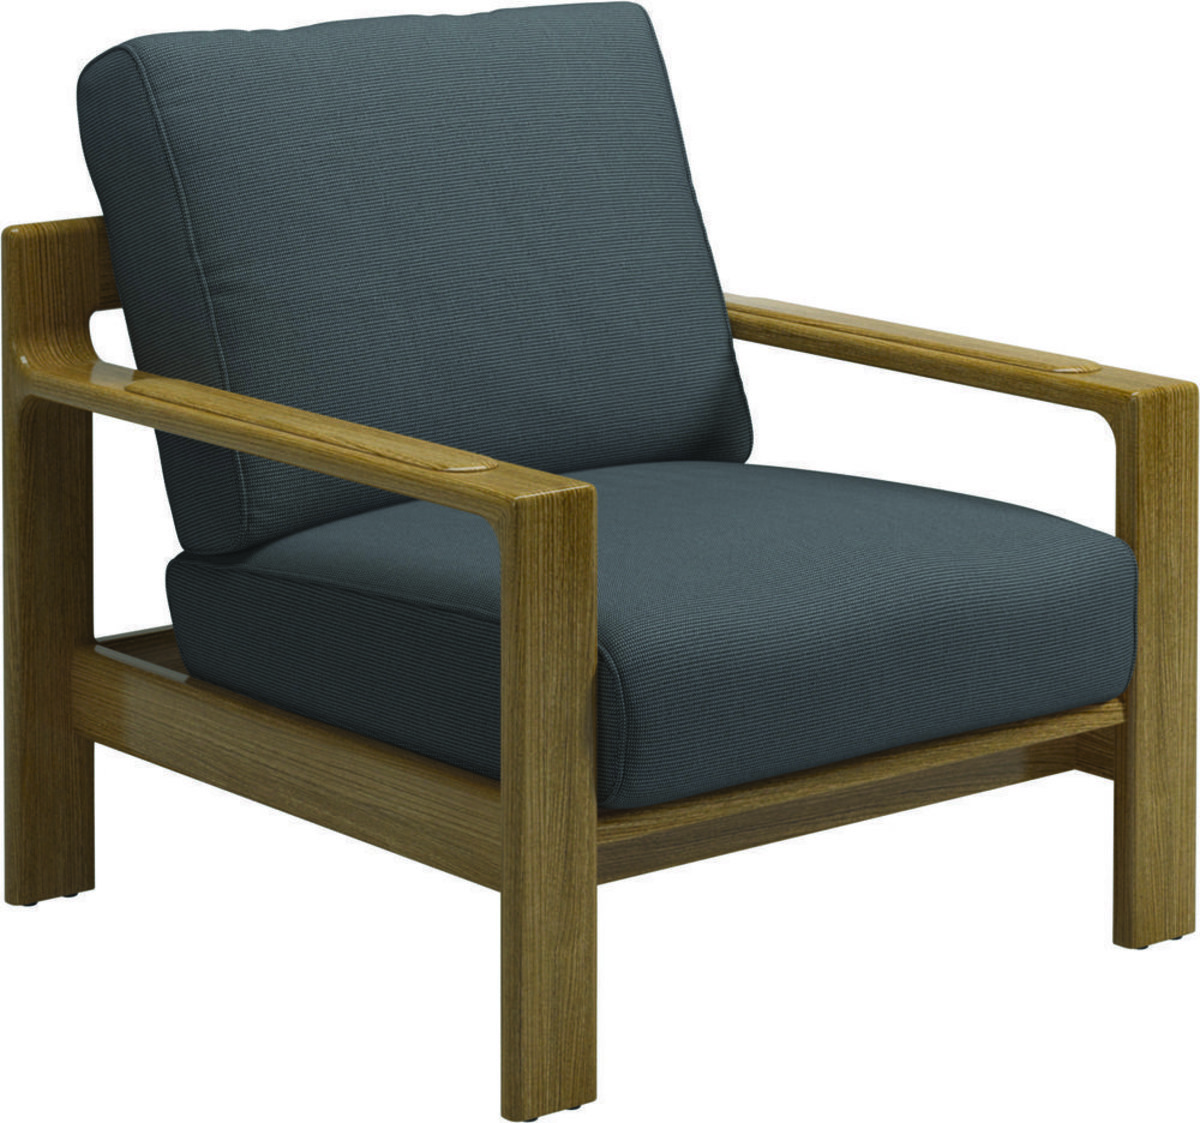 Wonderbaarlijk lounge stoel | Werpsterhoeke VP-78